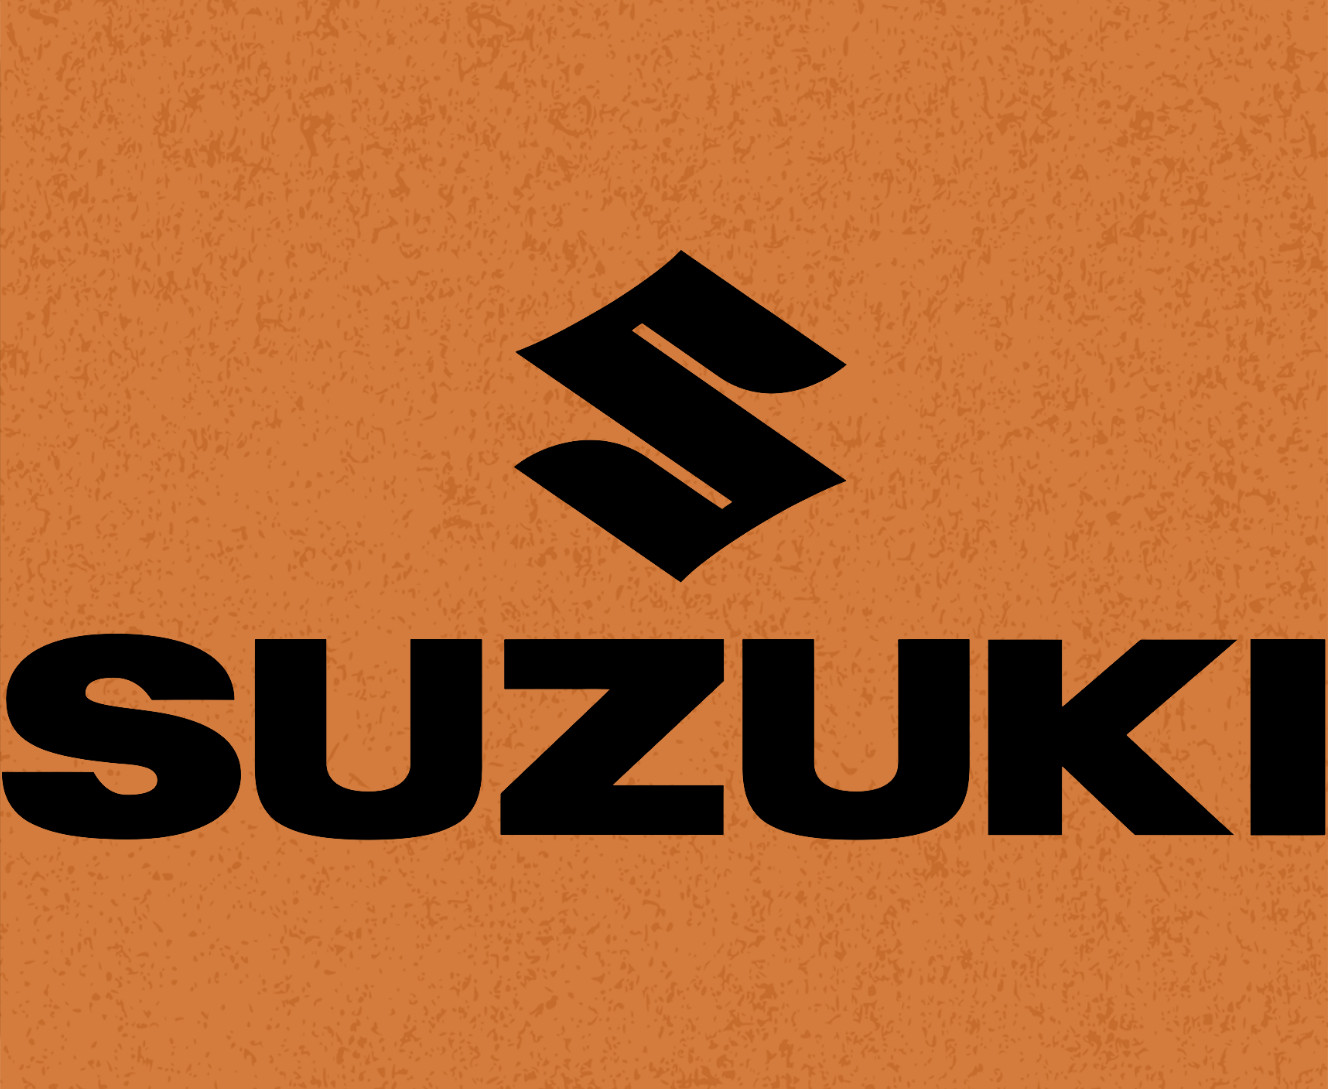 Suzuki - Mouse Pad - SUZUKI - LOGO 2 - Mfest